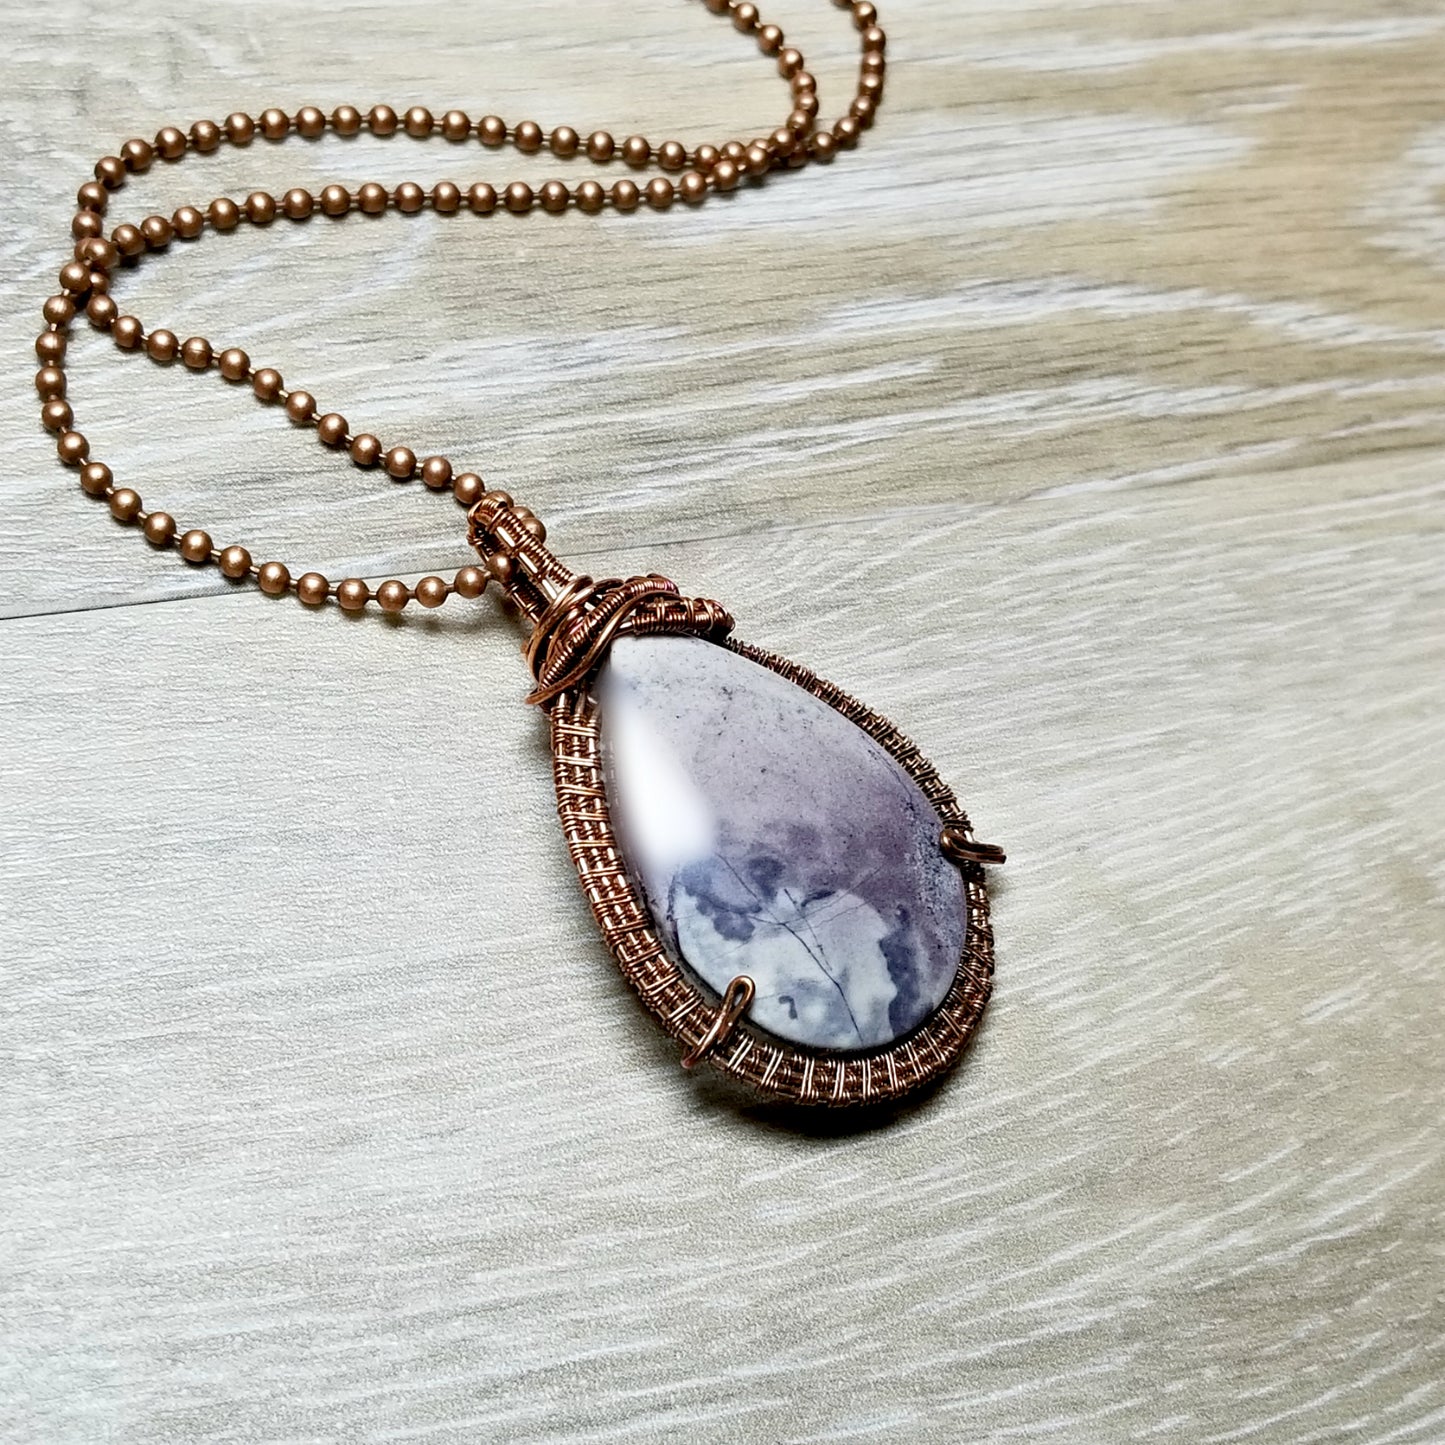 Rare Tiffany Stone Pendant Necklace, Wire Weave Copper Jewelry